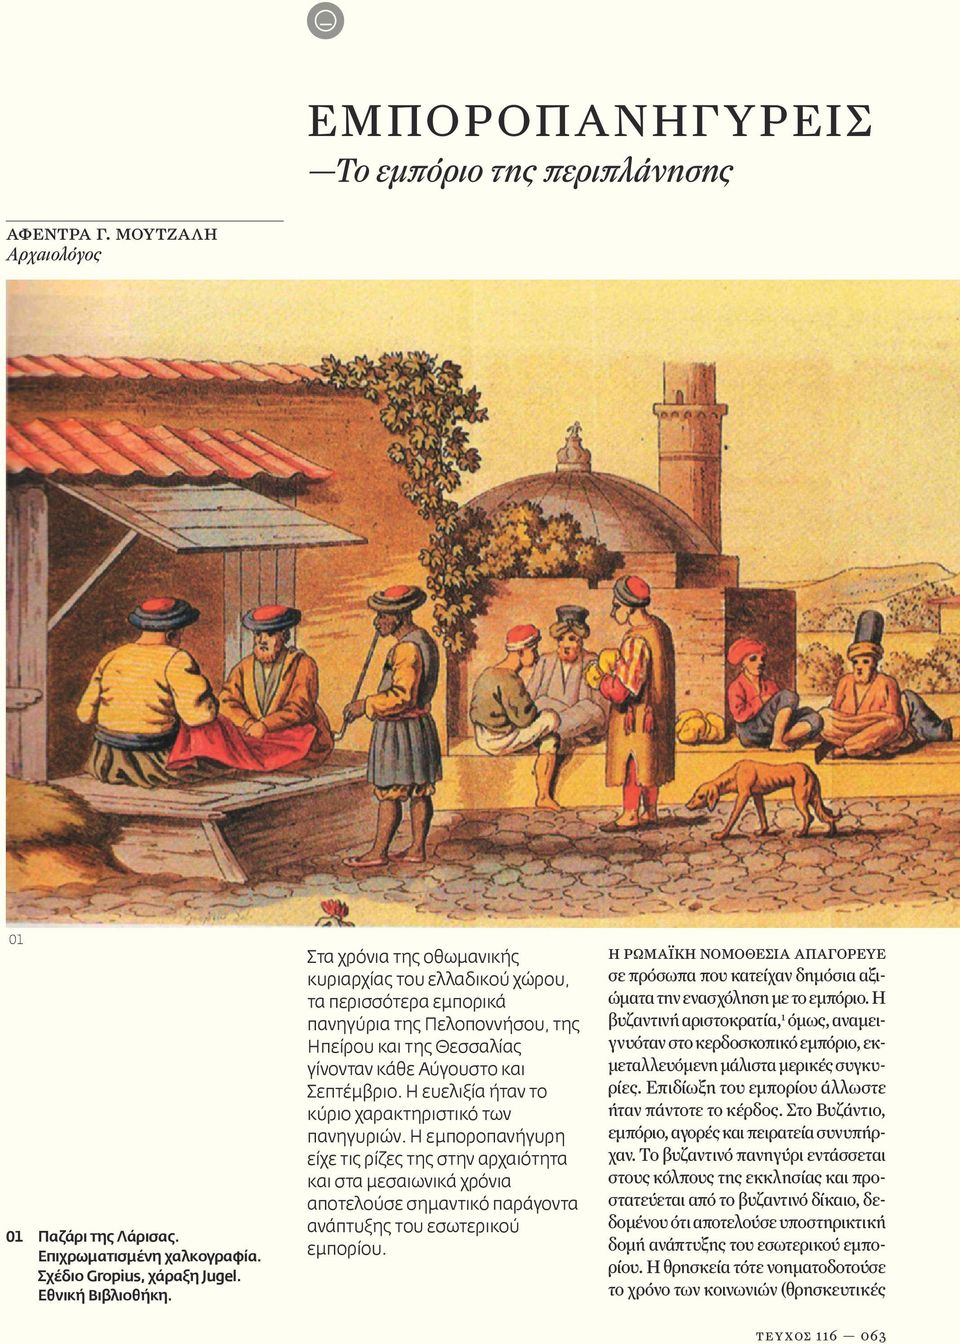 Η ευελιξία ήταν το κύριο χαρακτηριστικό των πανηγυριών. Η εμποροπανήγυρη είχε τις ρίζες της στην αρχαιότητα και στα μεσαιωνικά χρόνια αποτελούσε σημαντικό παράγοντα ανάπτυξης του εσωτερικού εμπορίου.